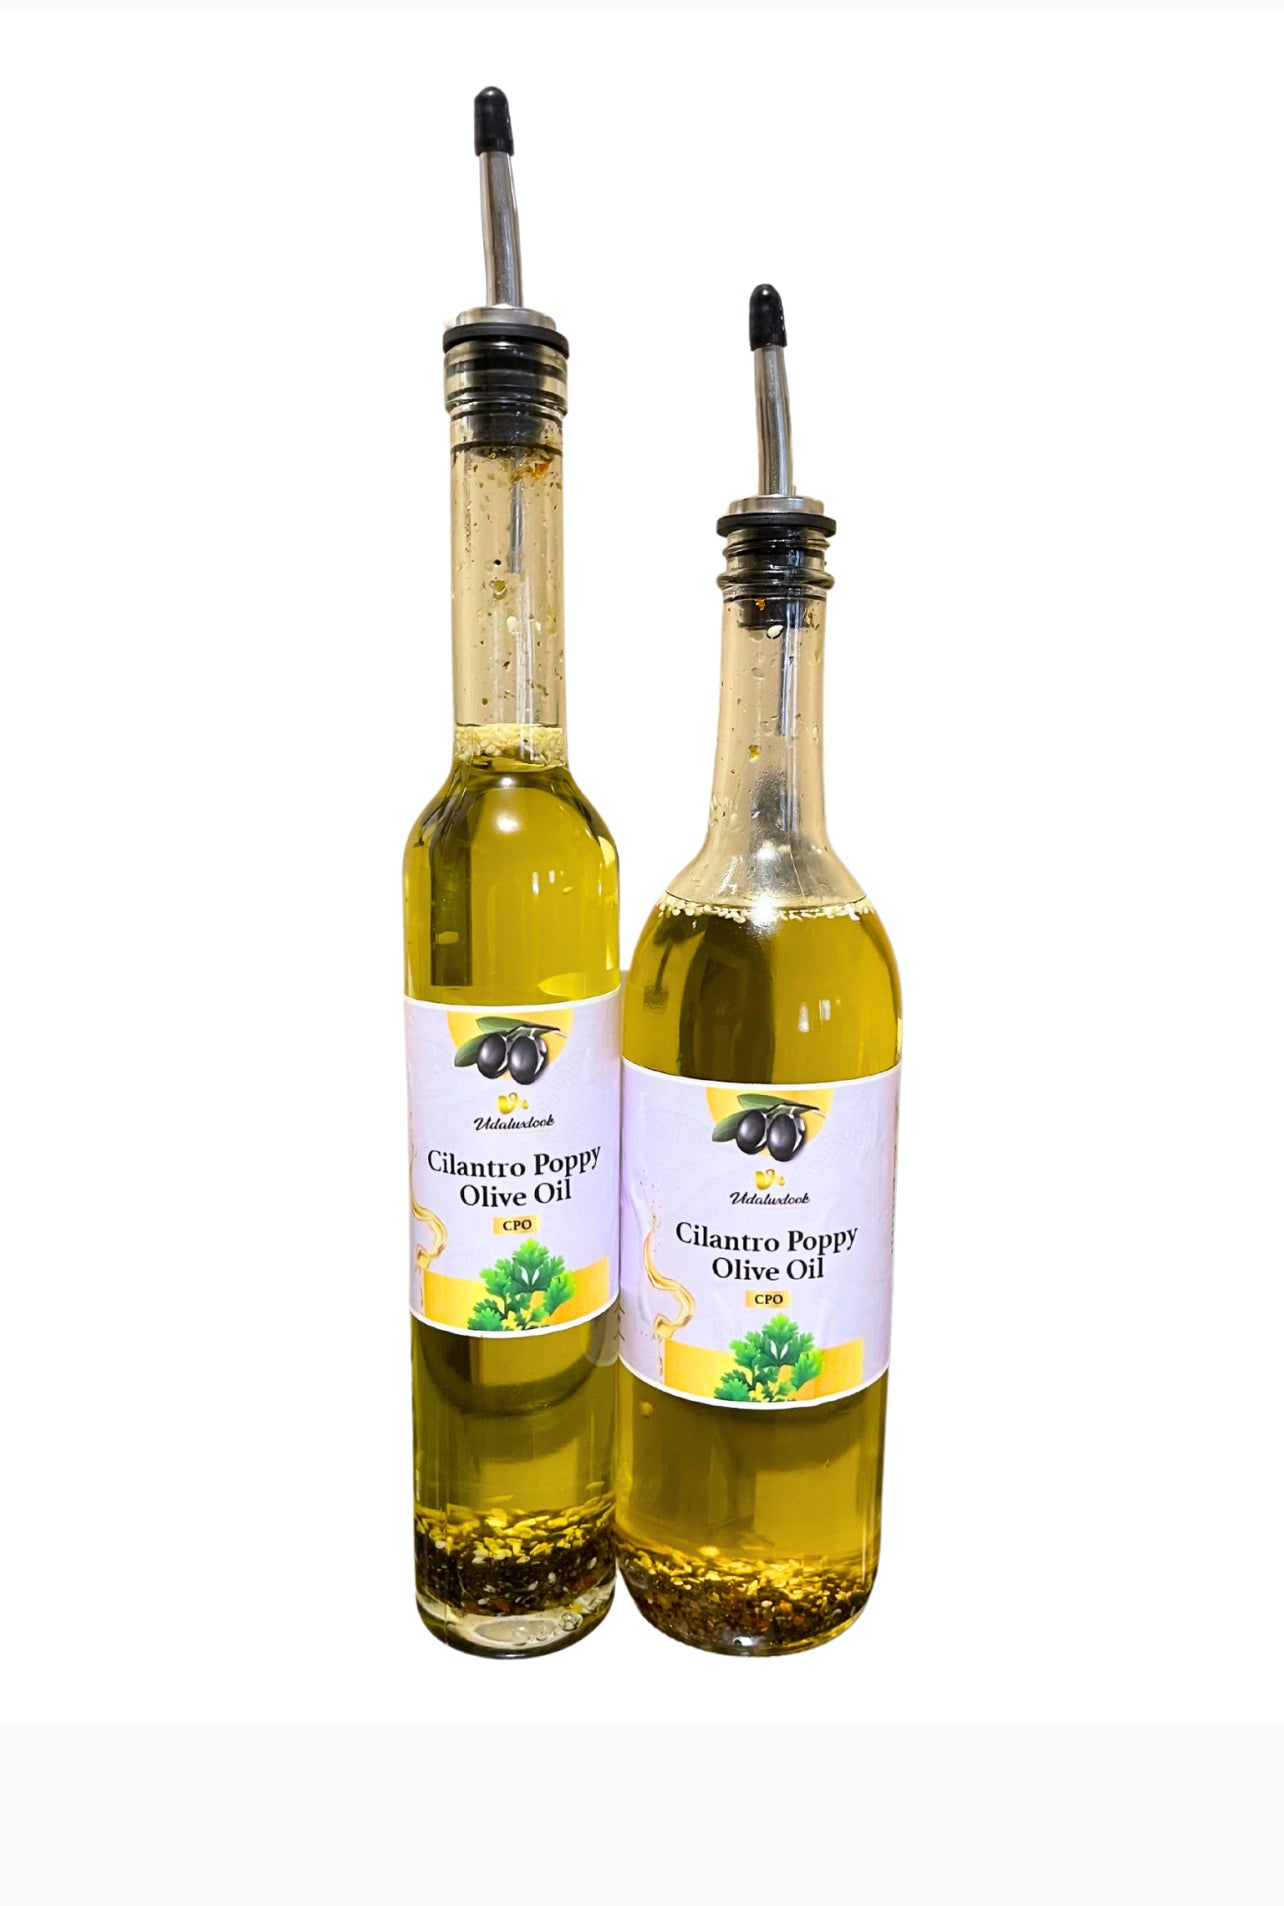 CPO: Cilantro Poppy Olive Oil